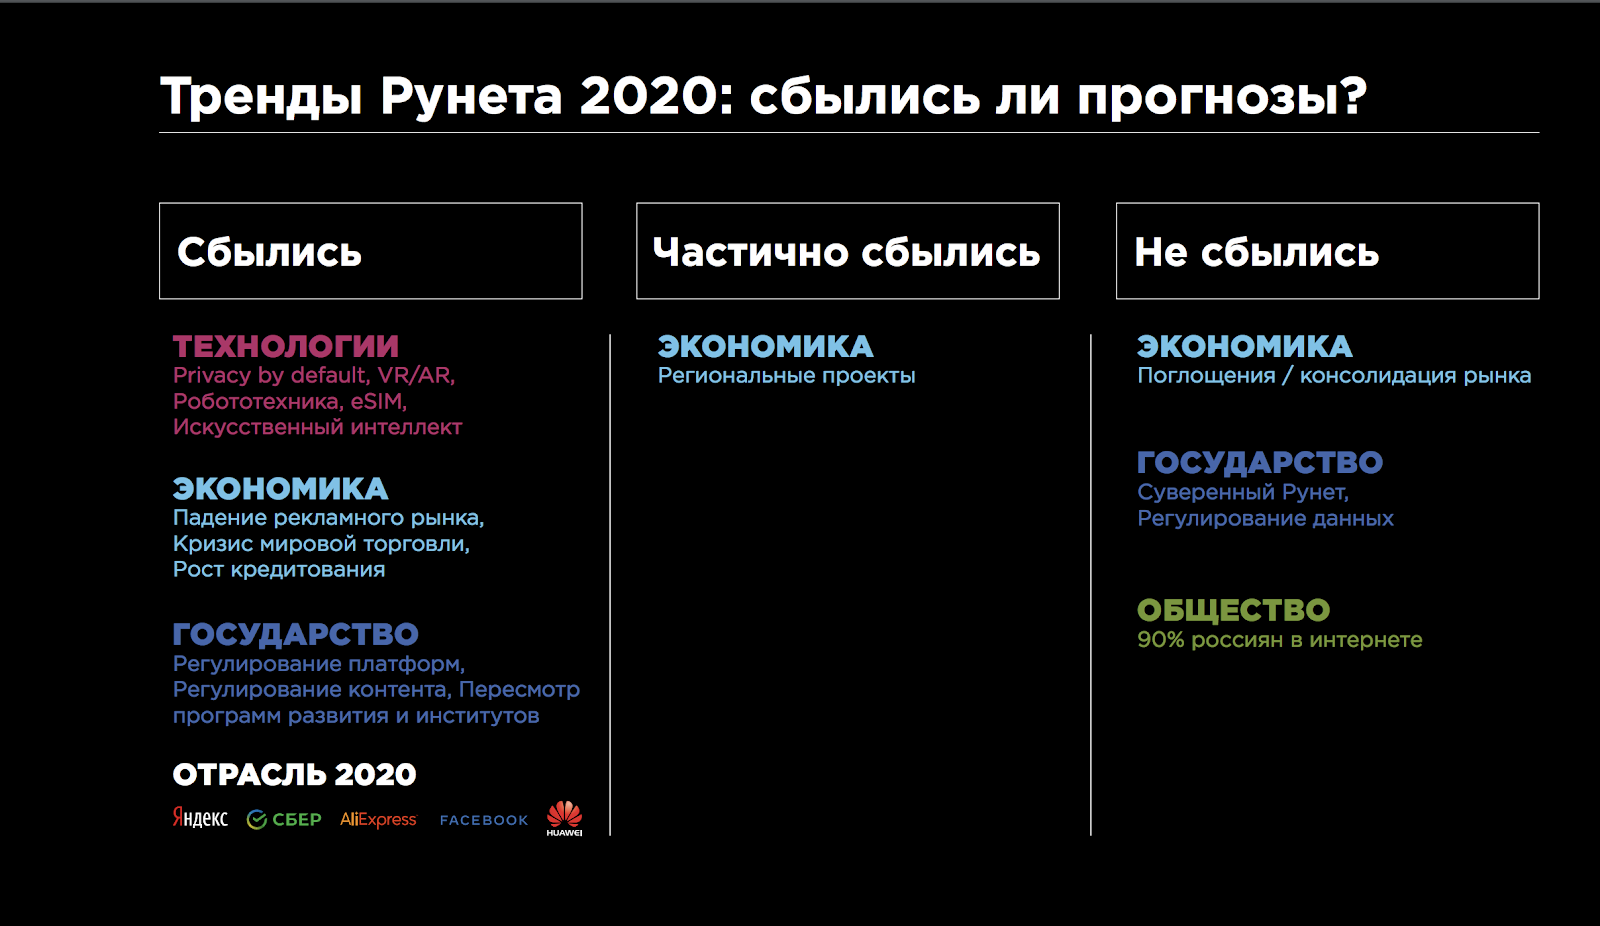 Тренды Рунета 2020: какие прогнозы сбылись